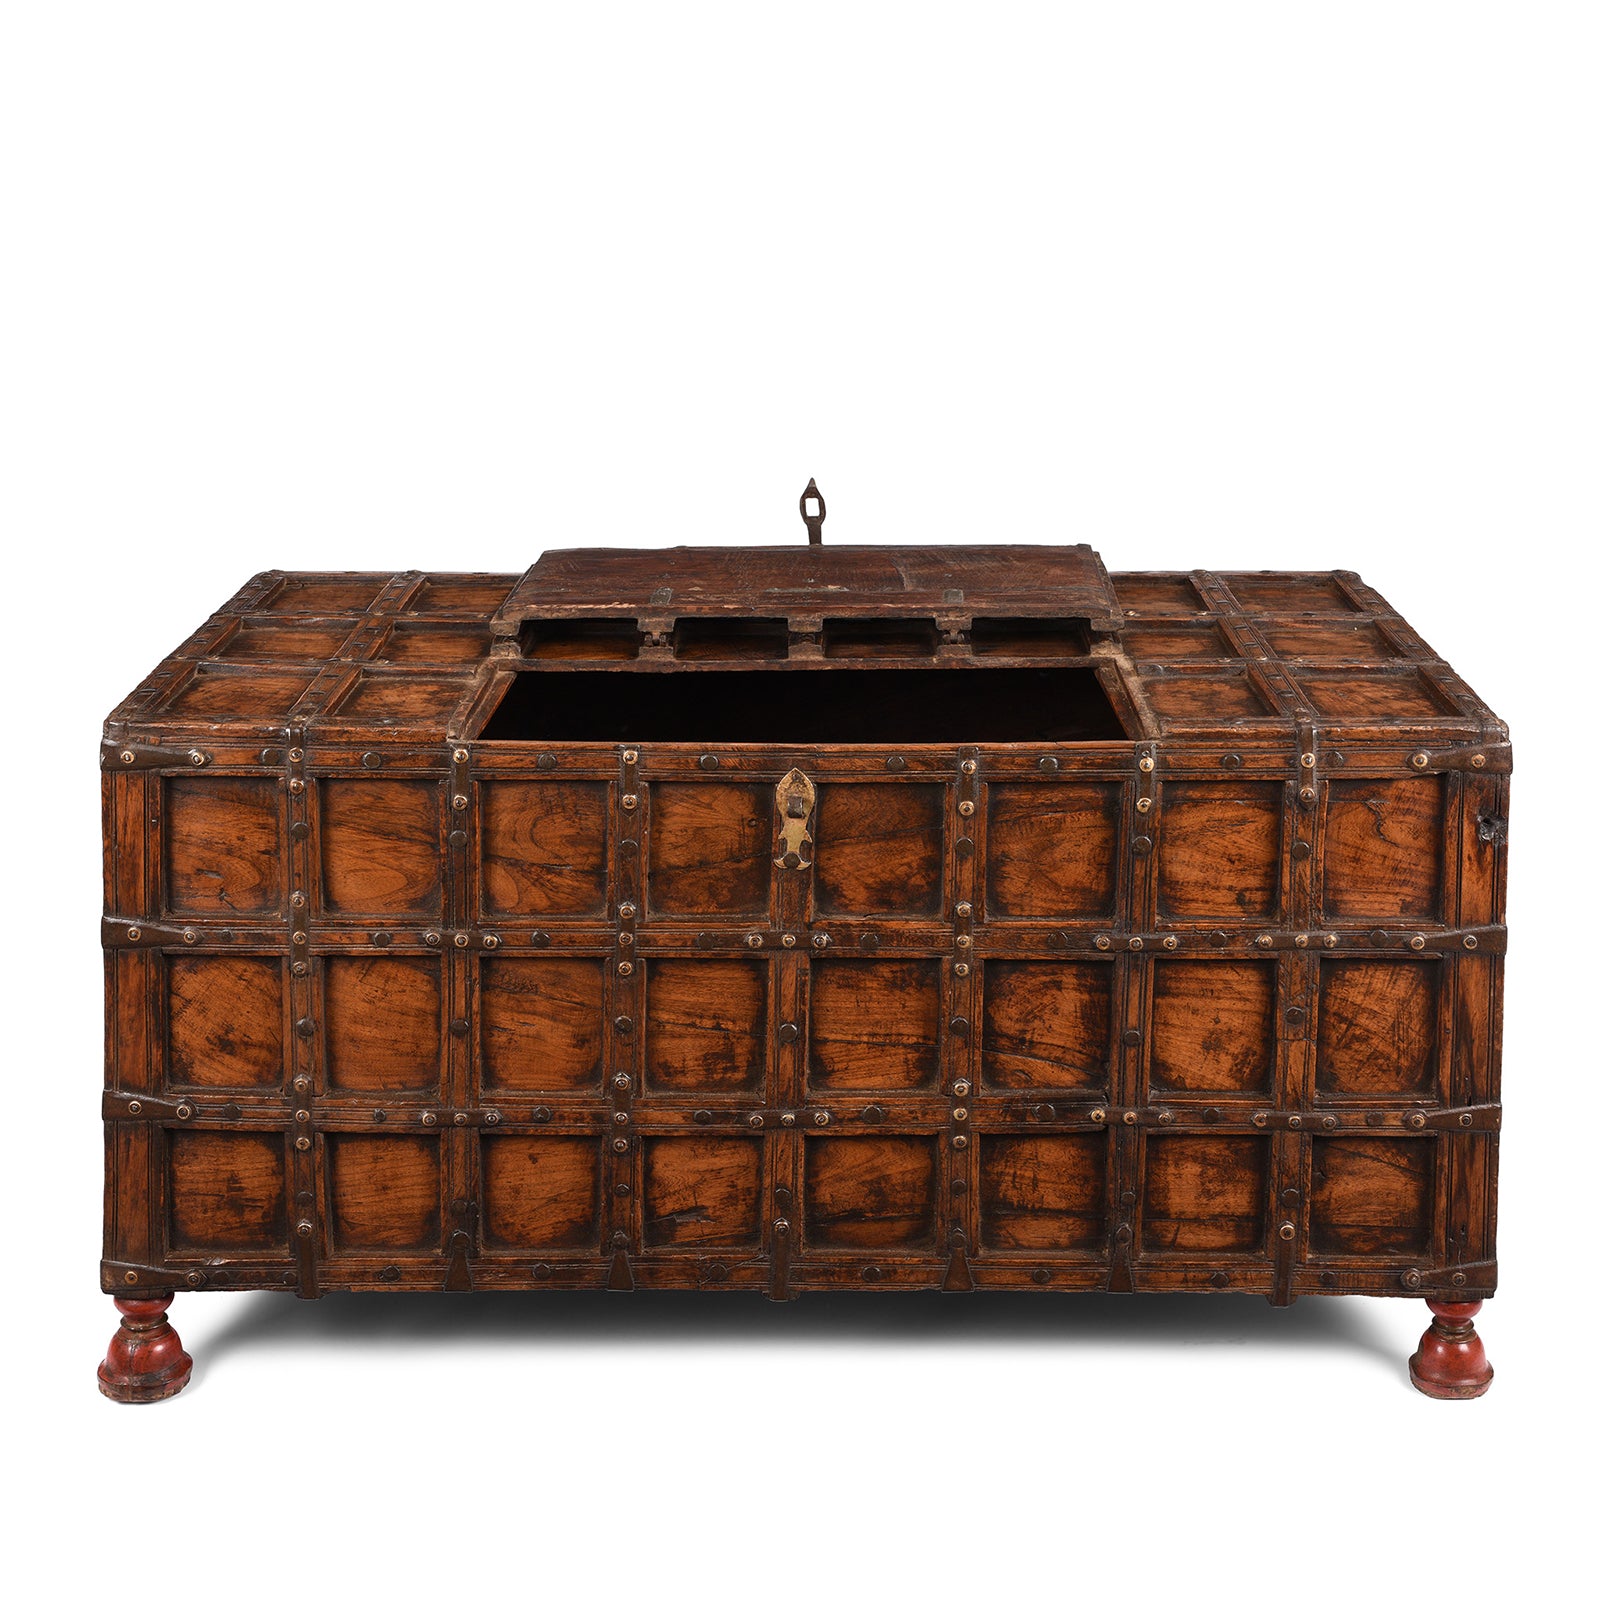 Antique Indian Stick Box Storage Chest From Jaisalmer - 19th Century | Indigo Antiques